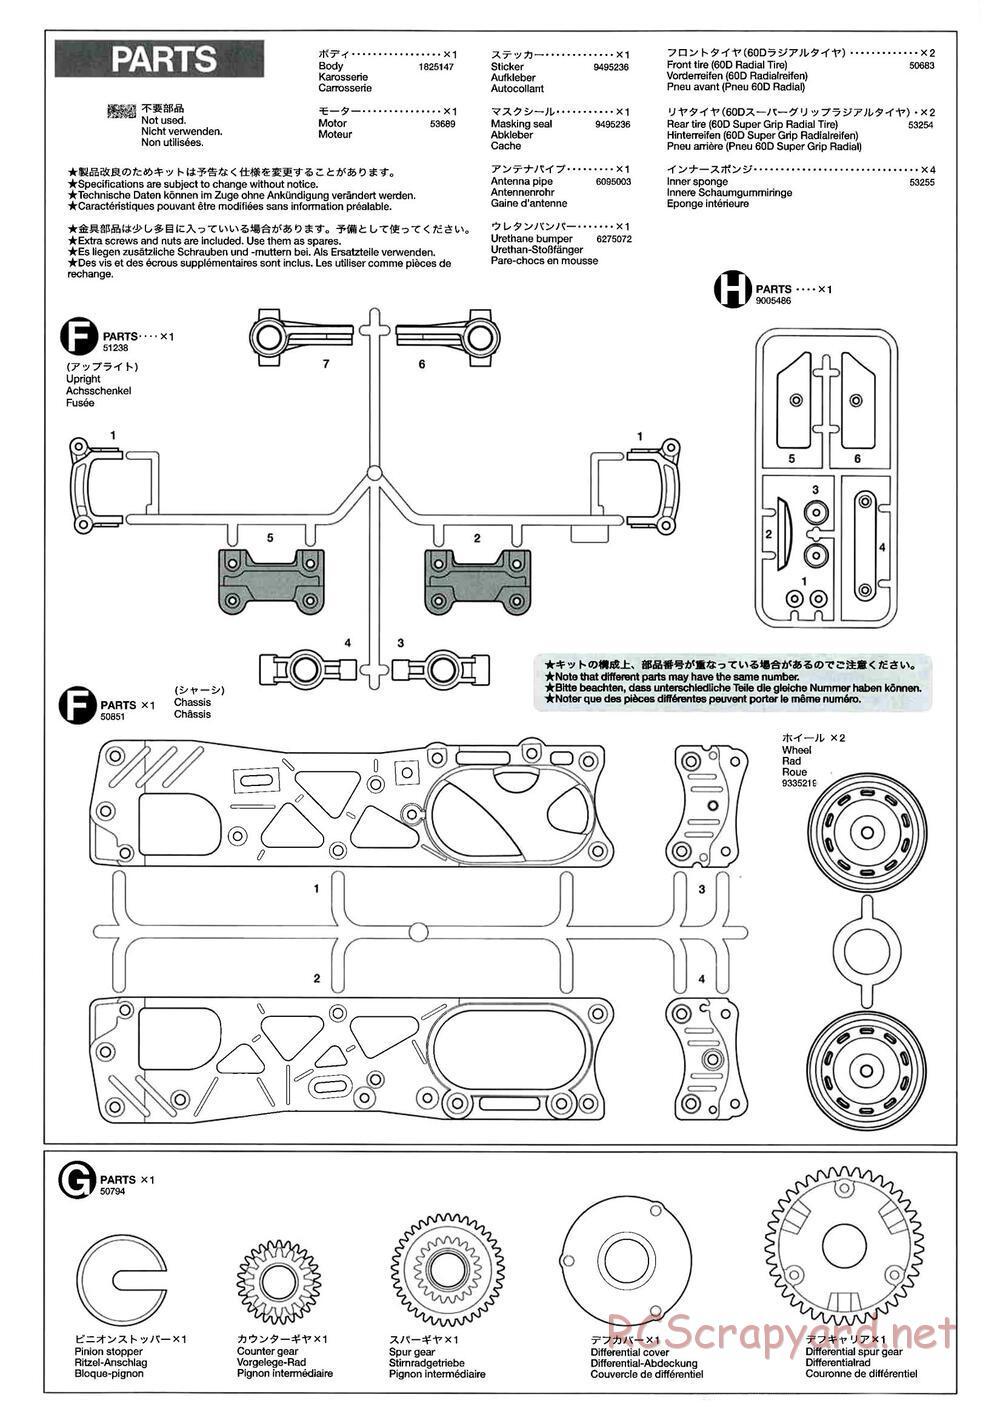 Tamiya - M-04L Chassis - Manual - Page 18